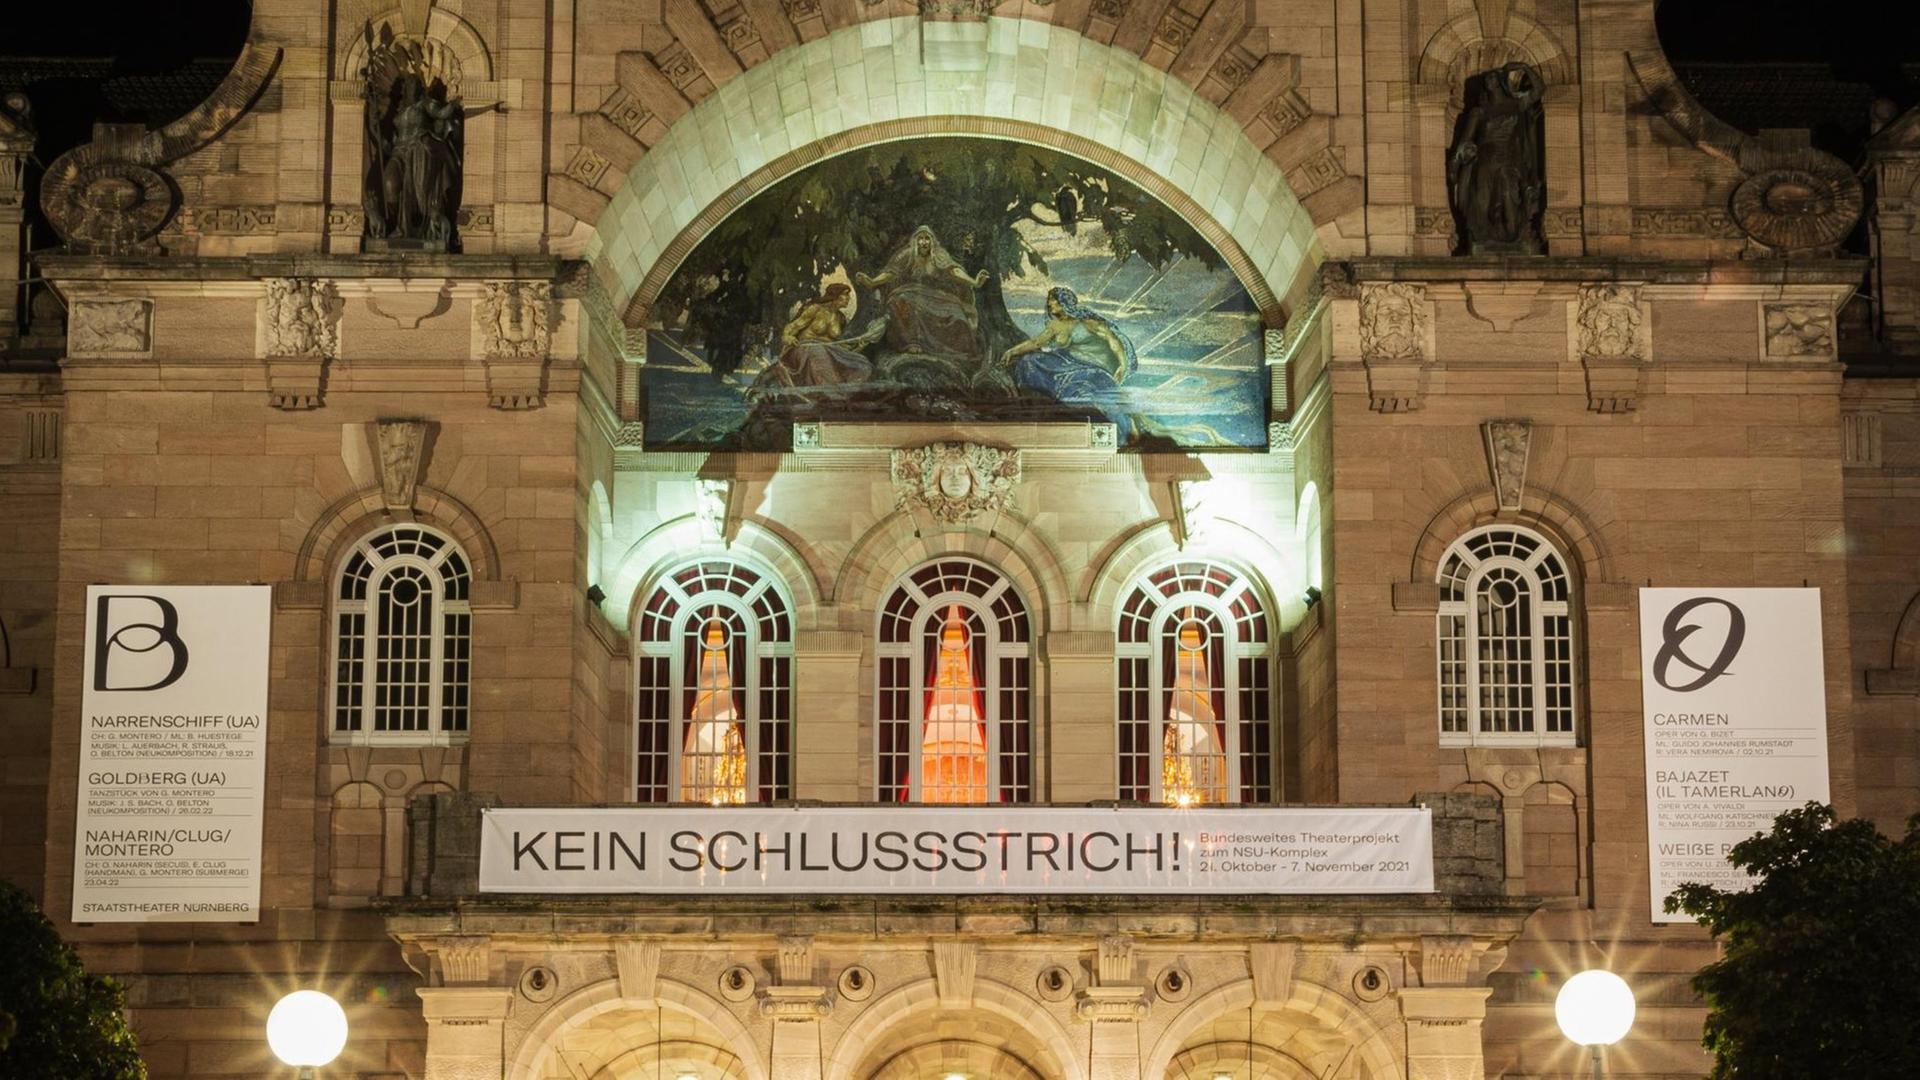 Das Nürnberger Theater beteiligt sich an der Theateraktion "Kein Schlusstrich!"